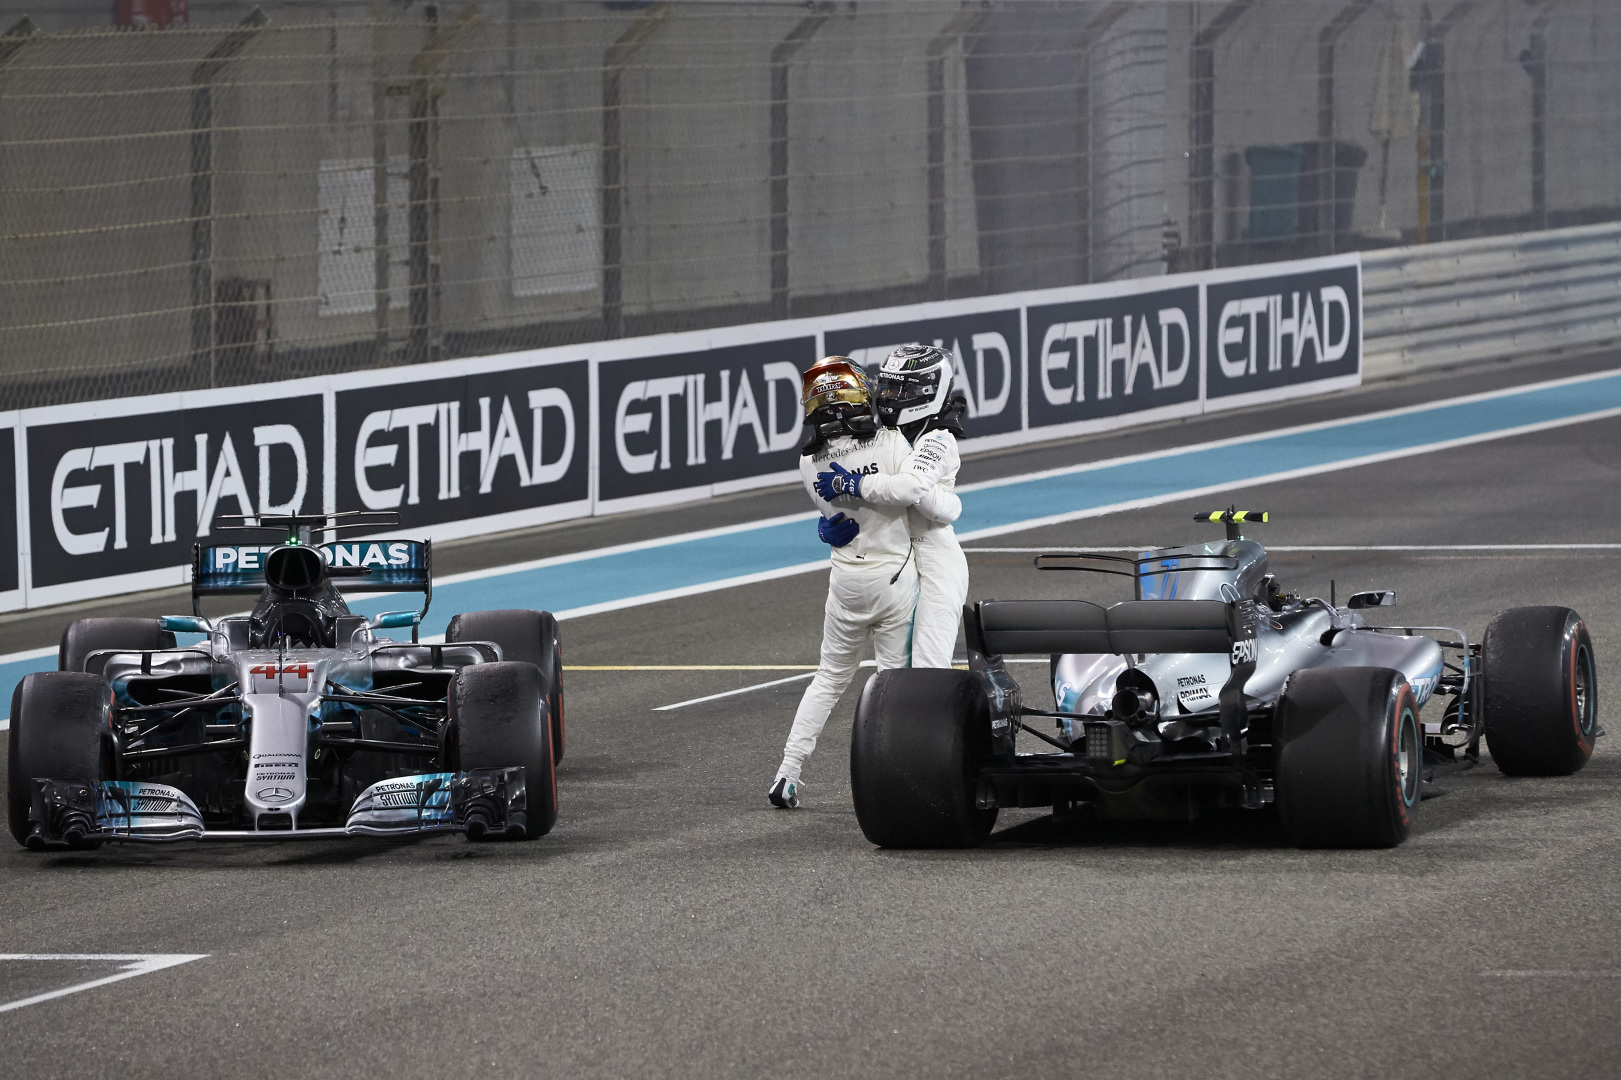 2017 Abu Dhabi Grand Prix, Sunday – Steve Etherington